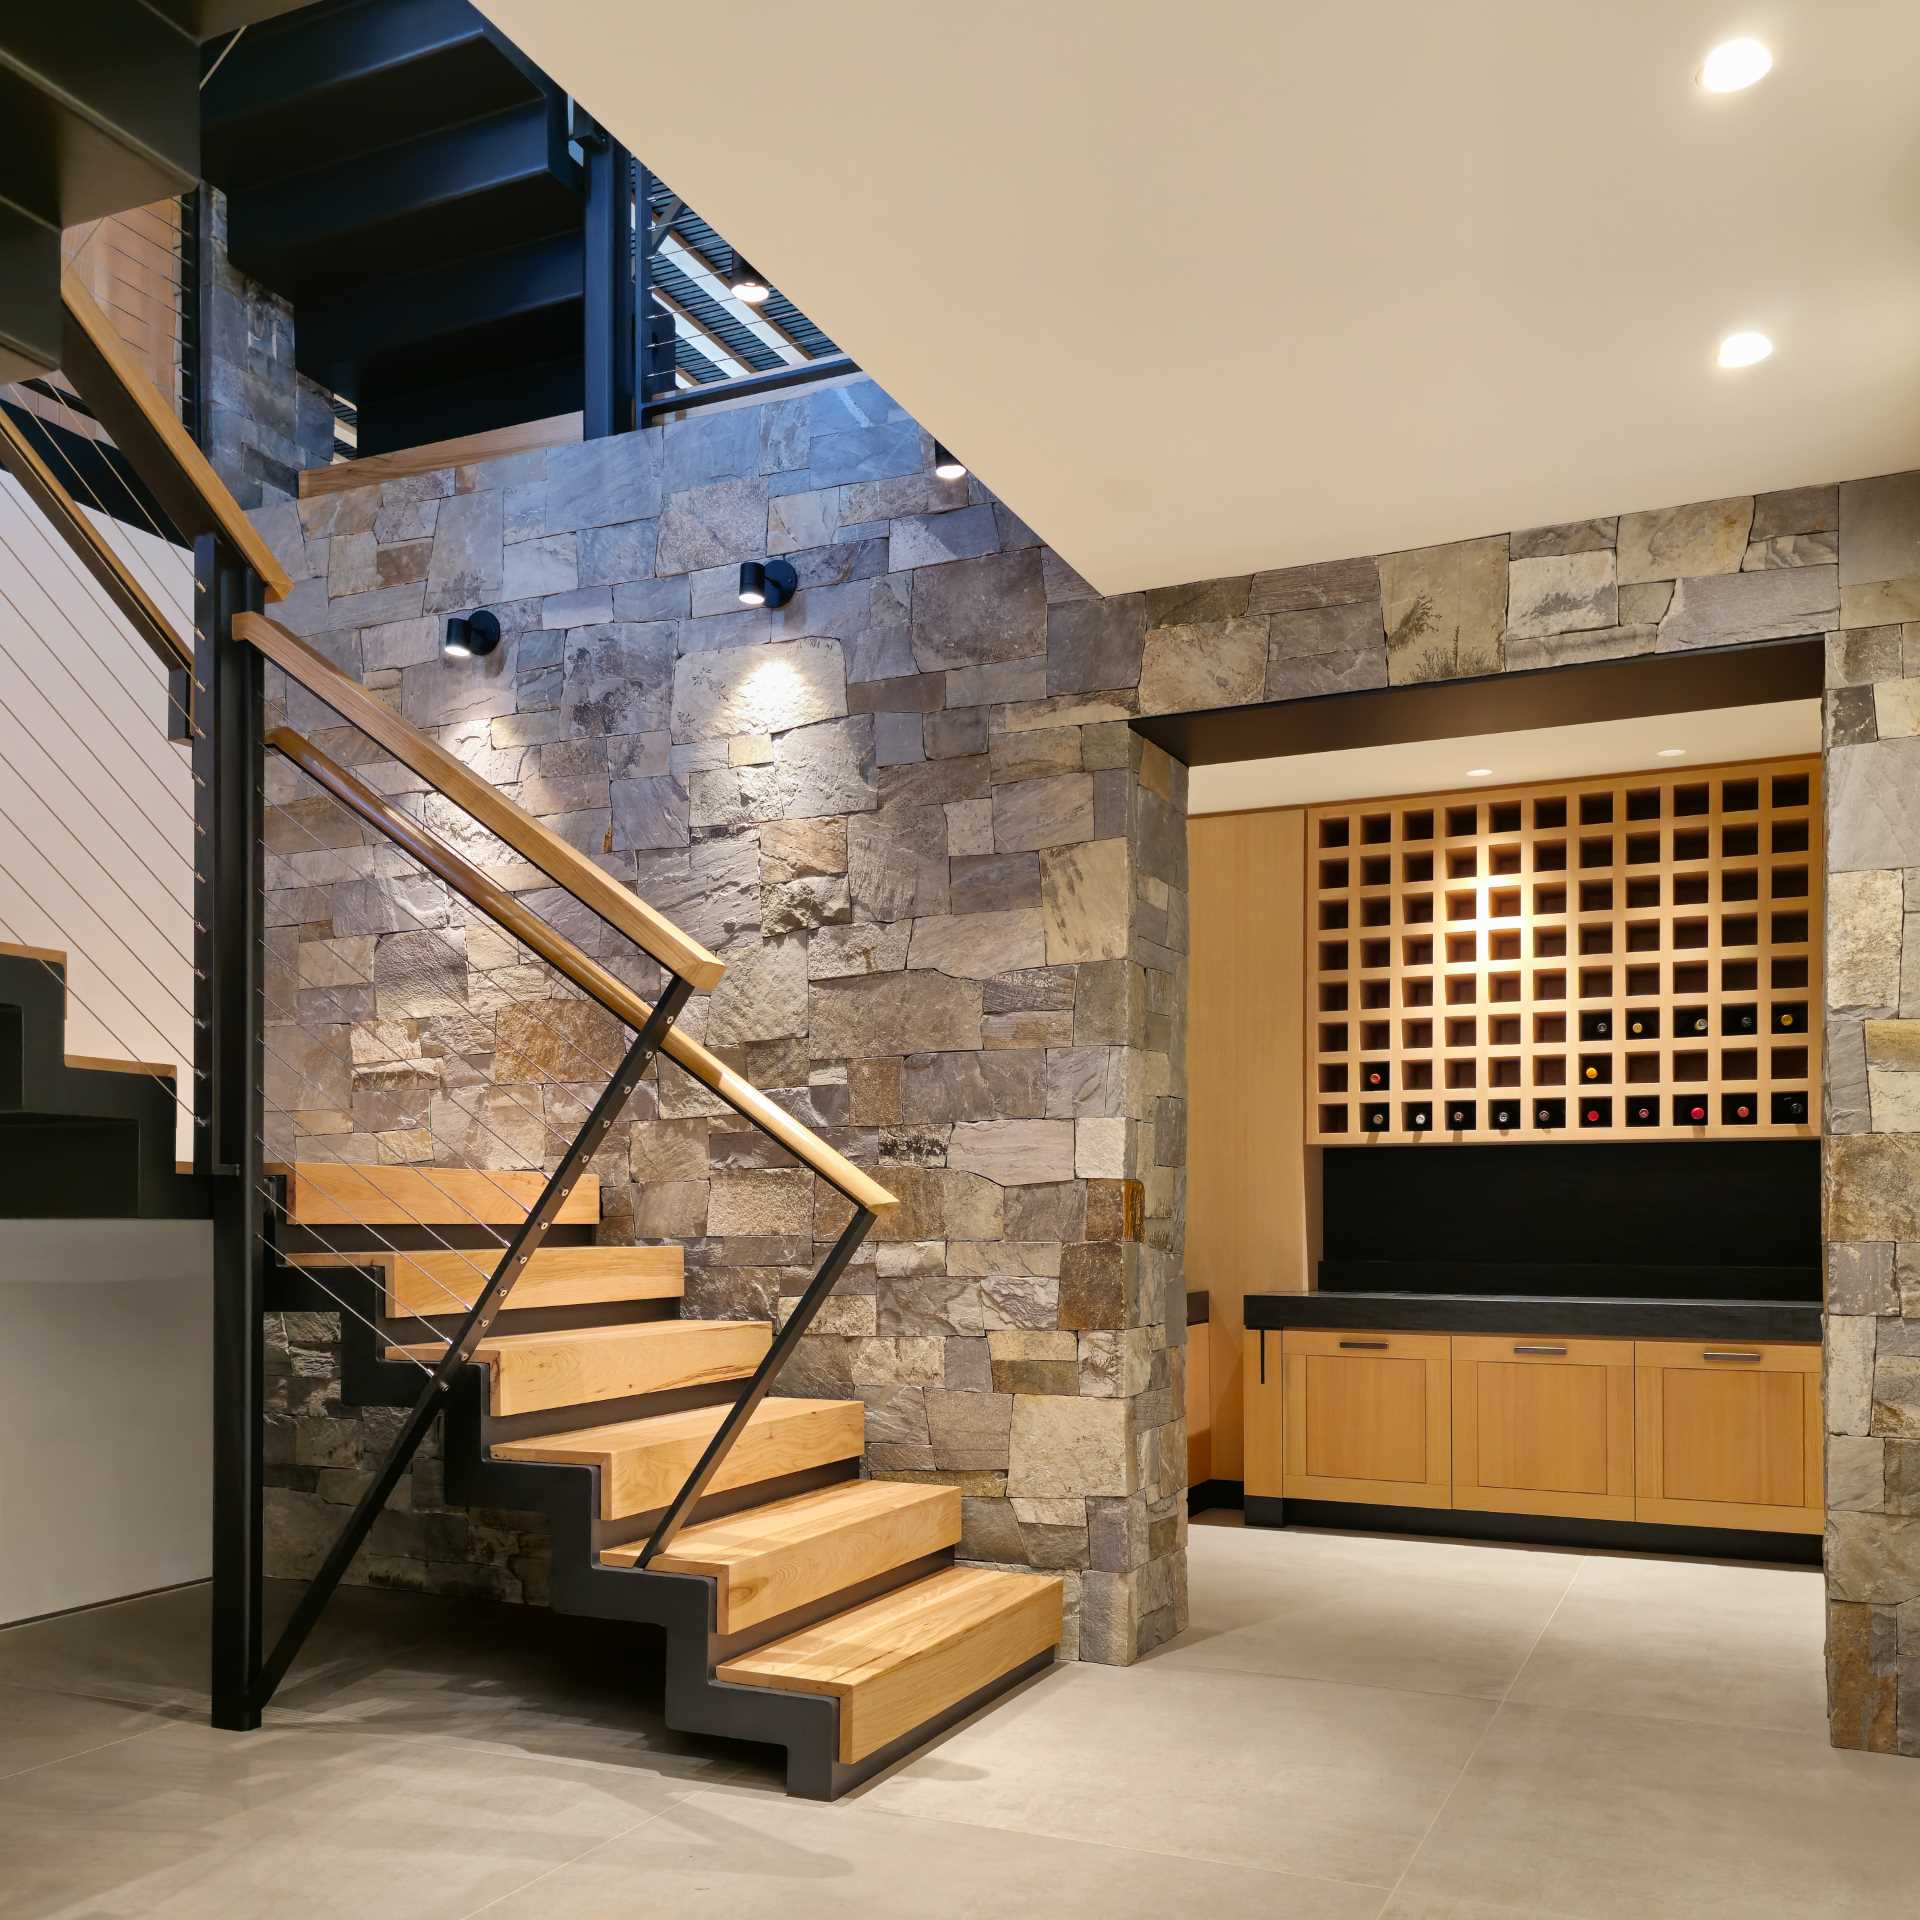 O casă modernă, cu scări din oțel și lemn și un suport de vin încorporat.